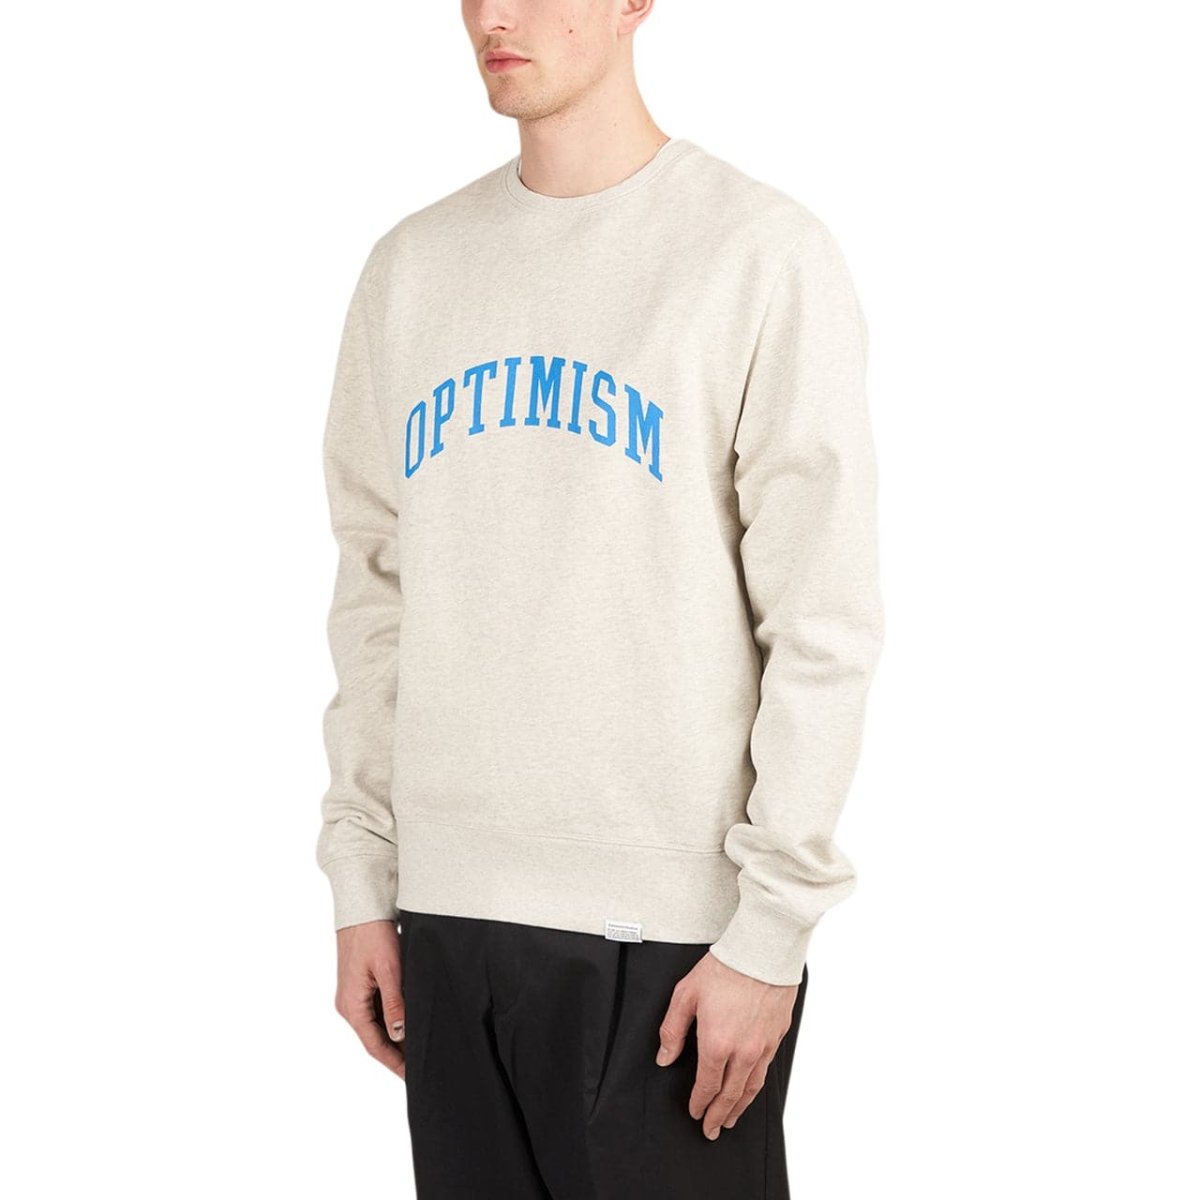 Edmmond Studios Optimism Sweatshirt (Hellgrau)  - Allike Store